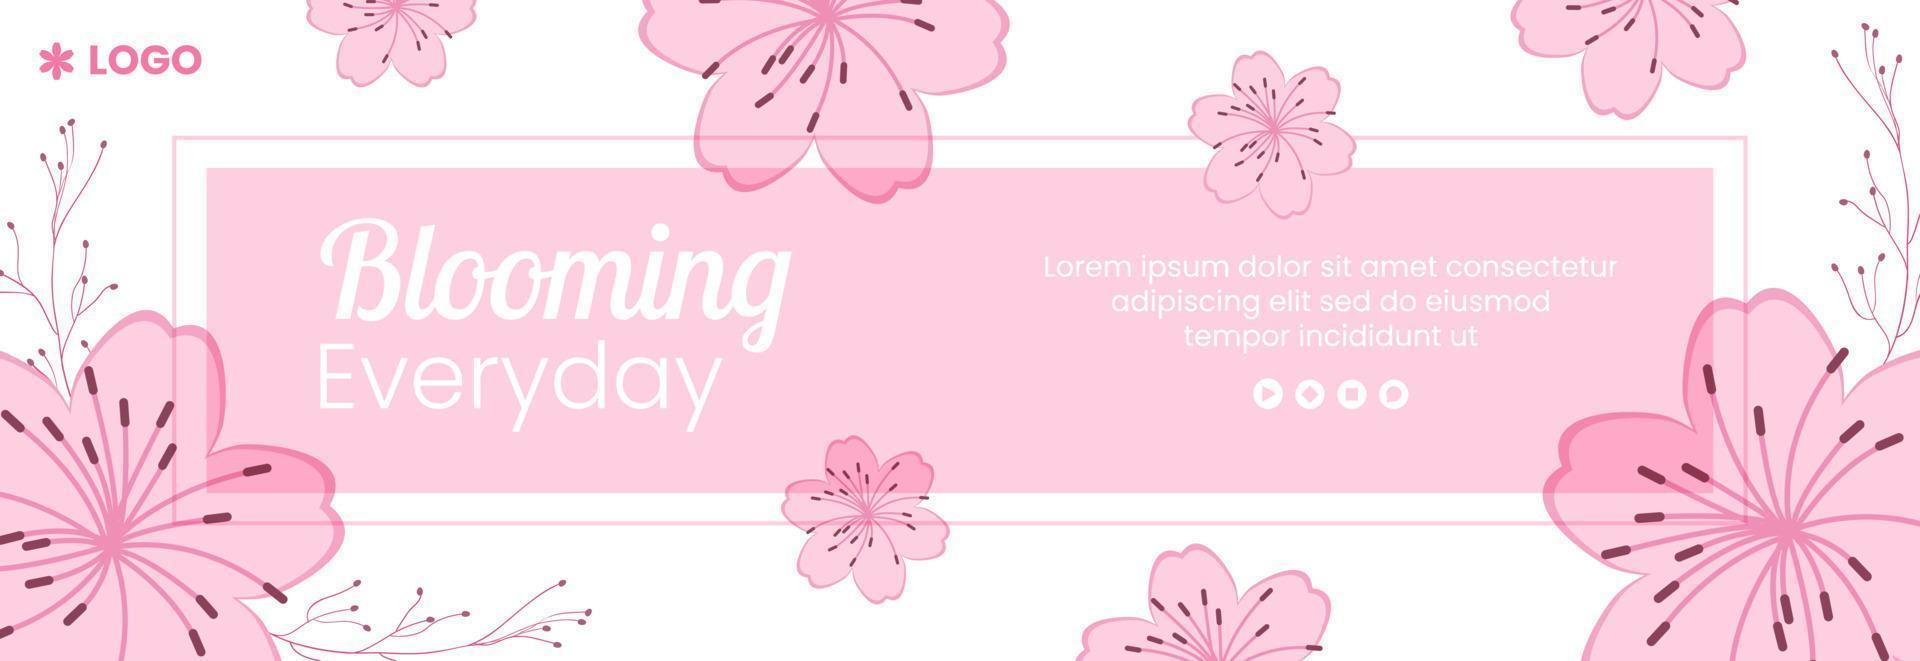 primavera com flores de sakura flor capa modelo ilustração plana editável de fundo quadrado para mídia social ou cartão de felicitações vetor